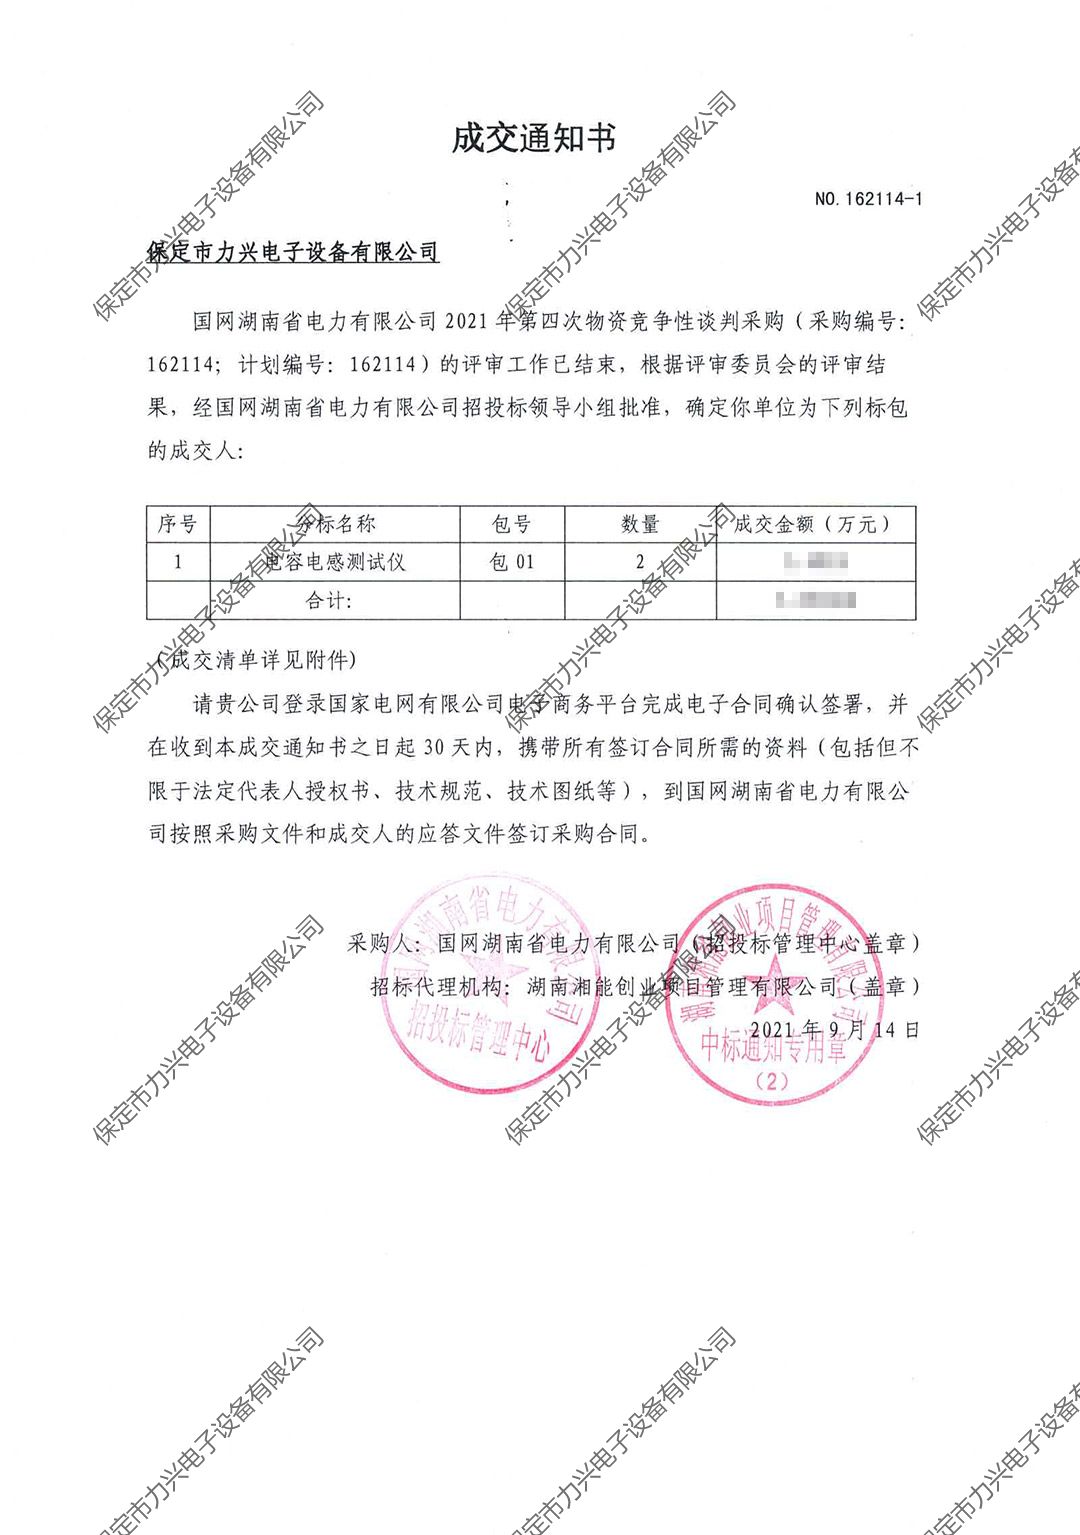 国网湖南省电力有限公司2021年第四次物资竞争性谈判项目.jpg